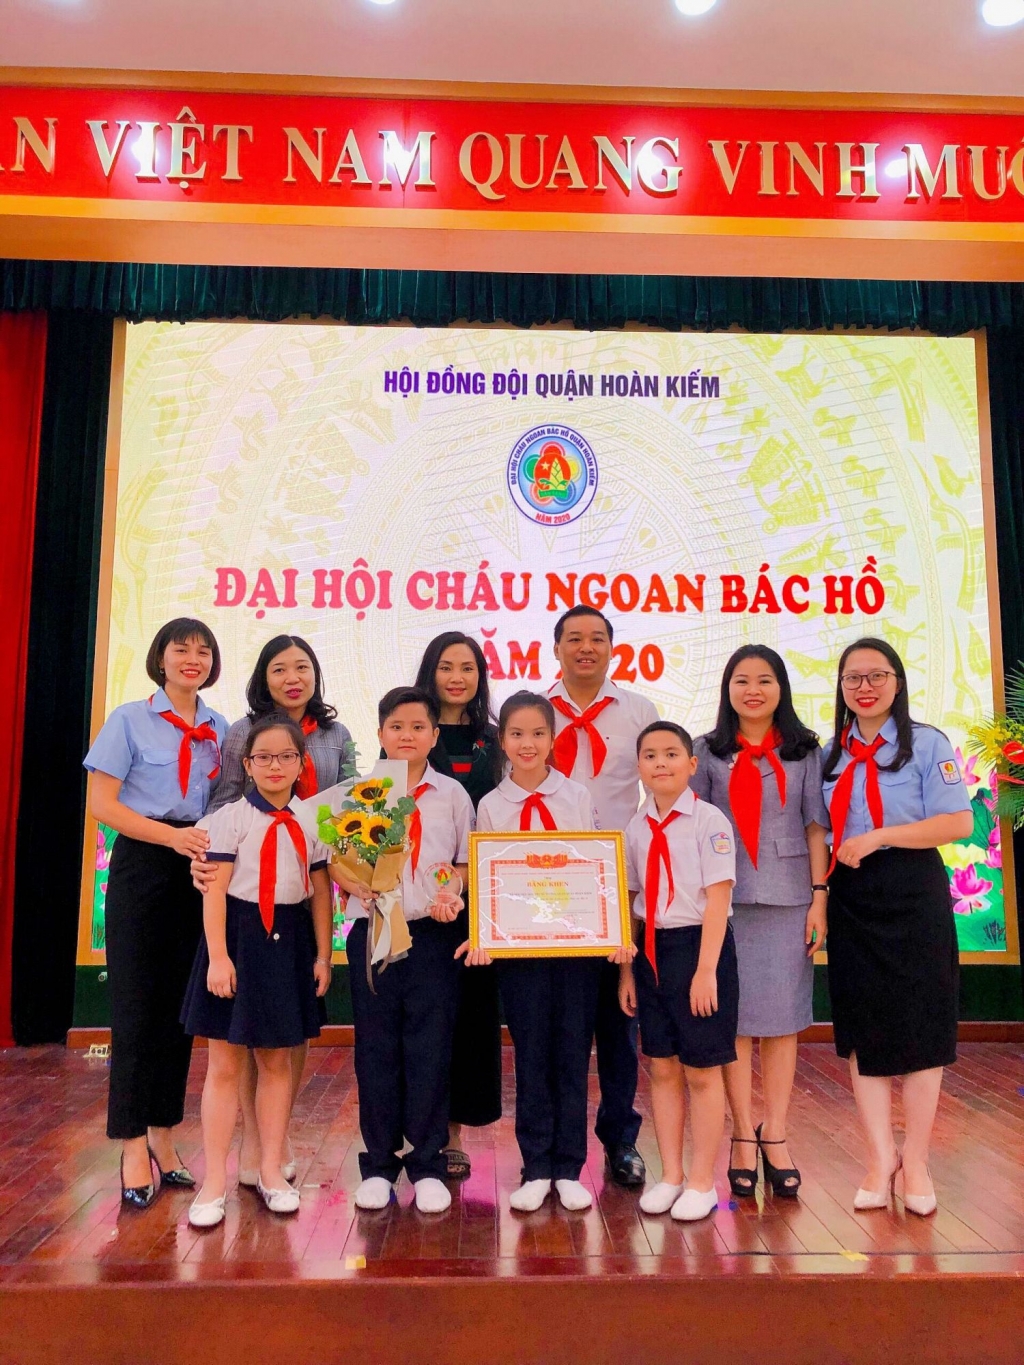 hầy và trò trường Tiểu học Trưng Vương chụp ảnh lưu niệm với lãnh đạo UBND quận Hoàn Kiếm và lãnh đạo Thành đoàn Hà Nội, Quận đoàn Hoàn Kiếm